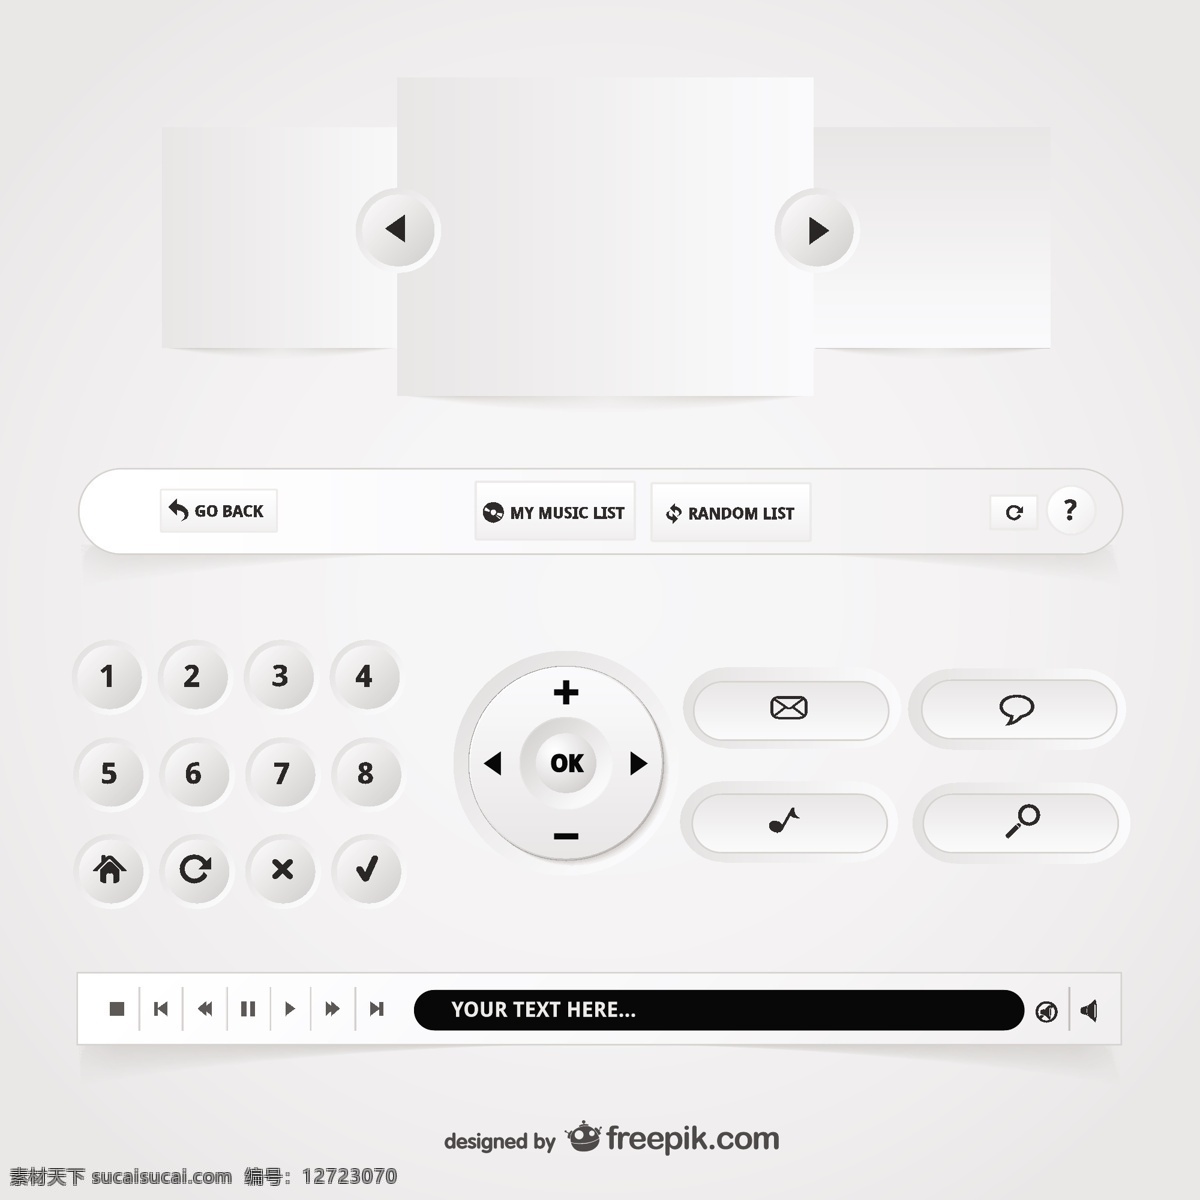 用户界面按钮 标签 音乐 按钮 模板 网页 网站 图形 视频 网页设计 布局 数字 图形设计 列表 网站模板 游戏 元素 白色